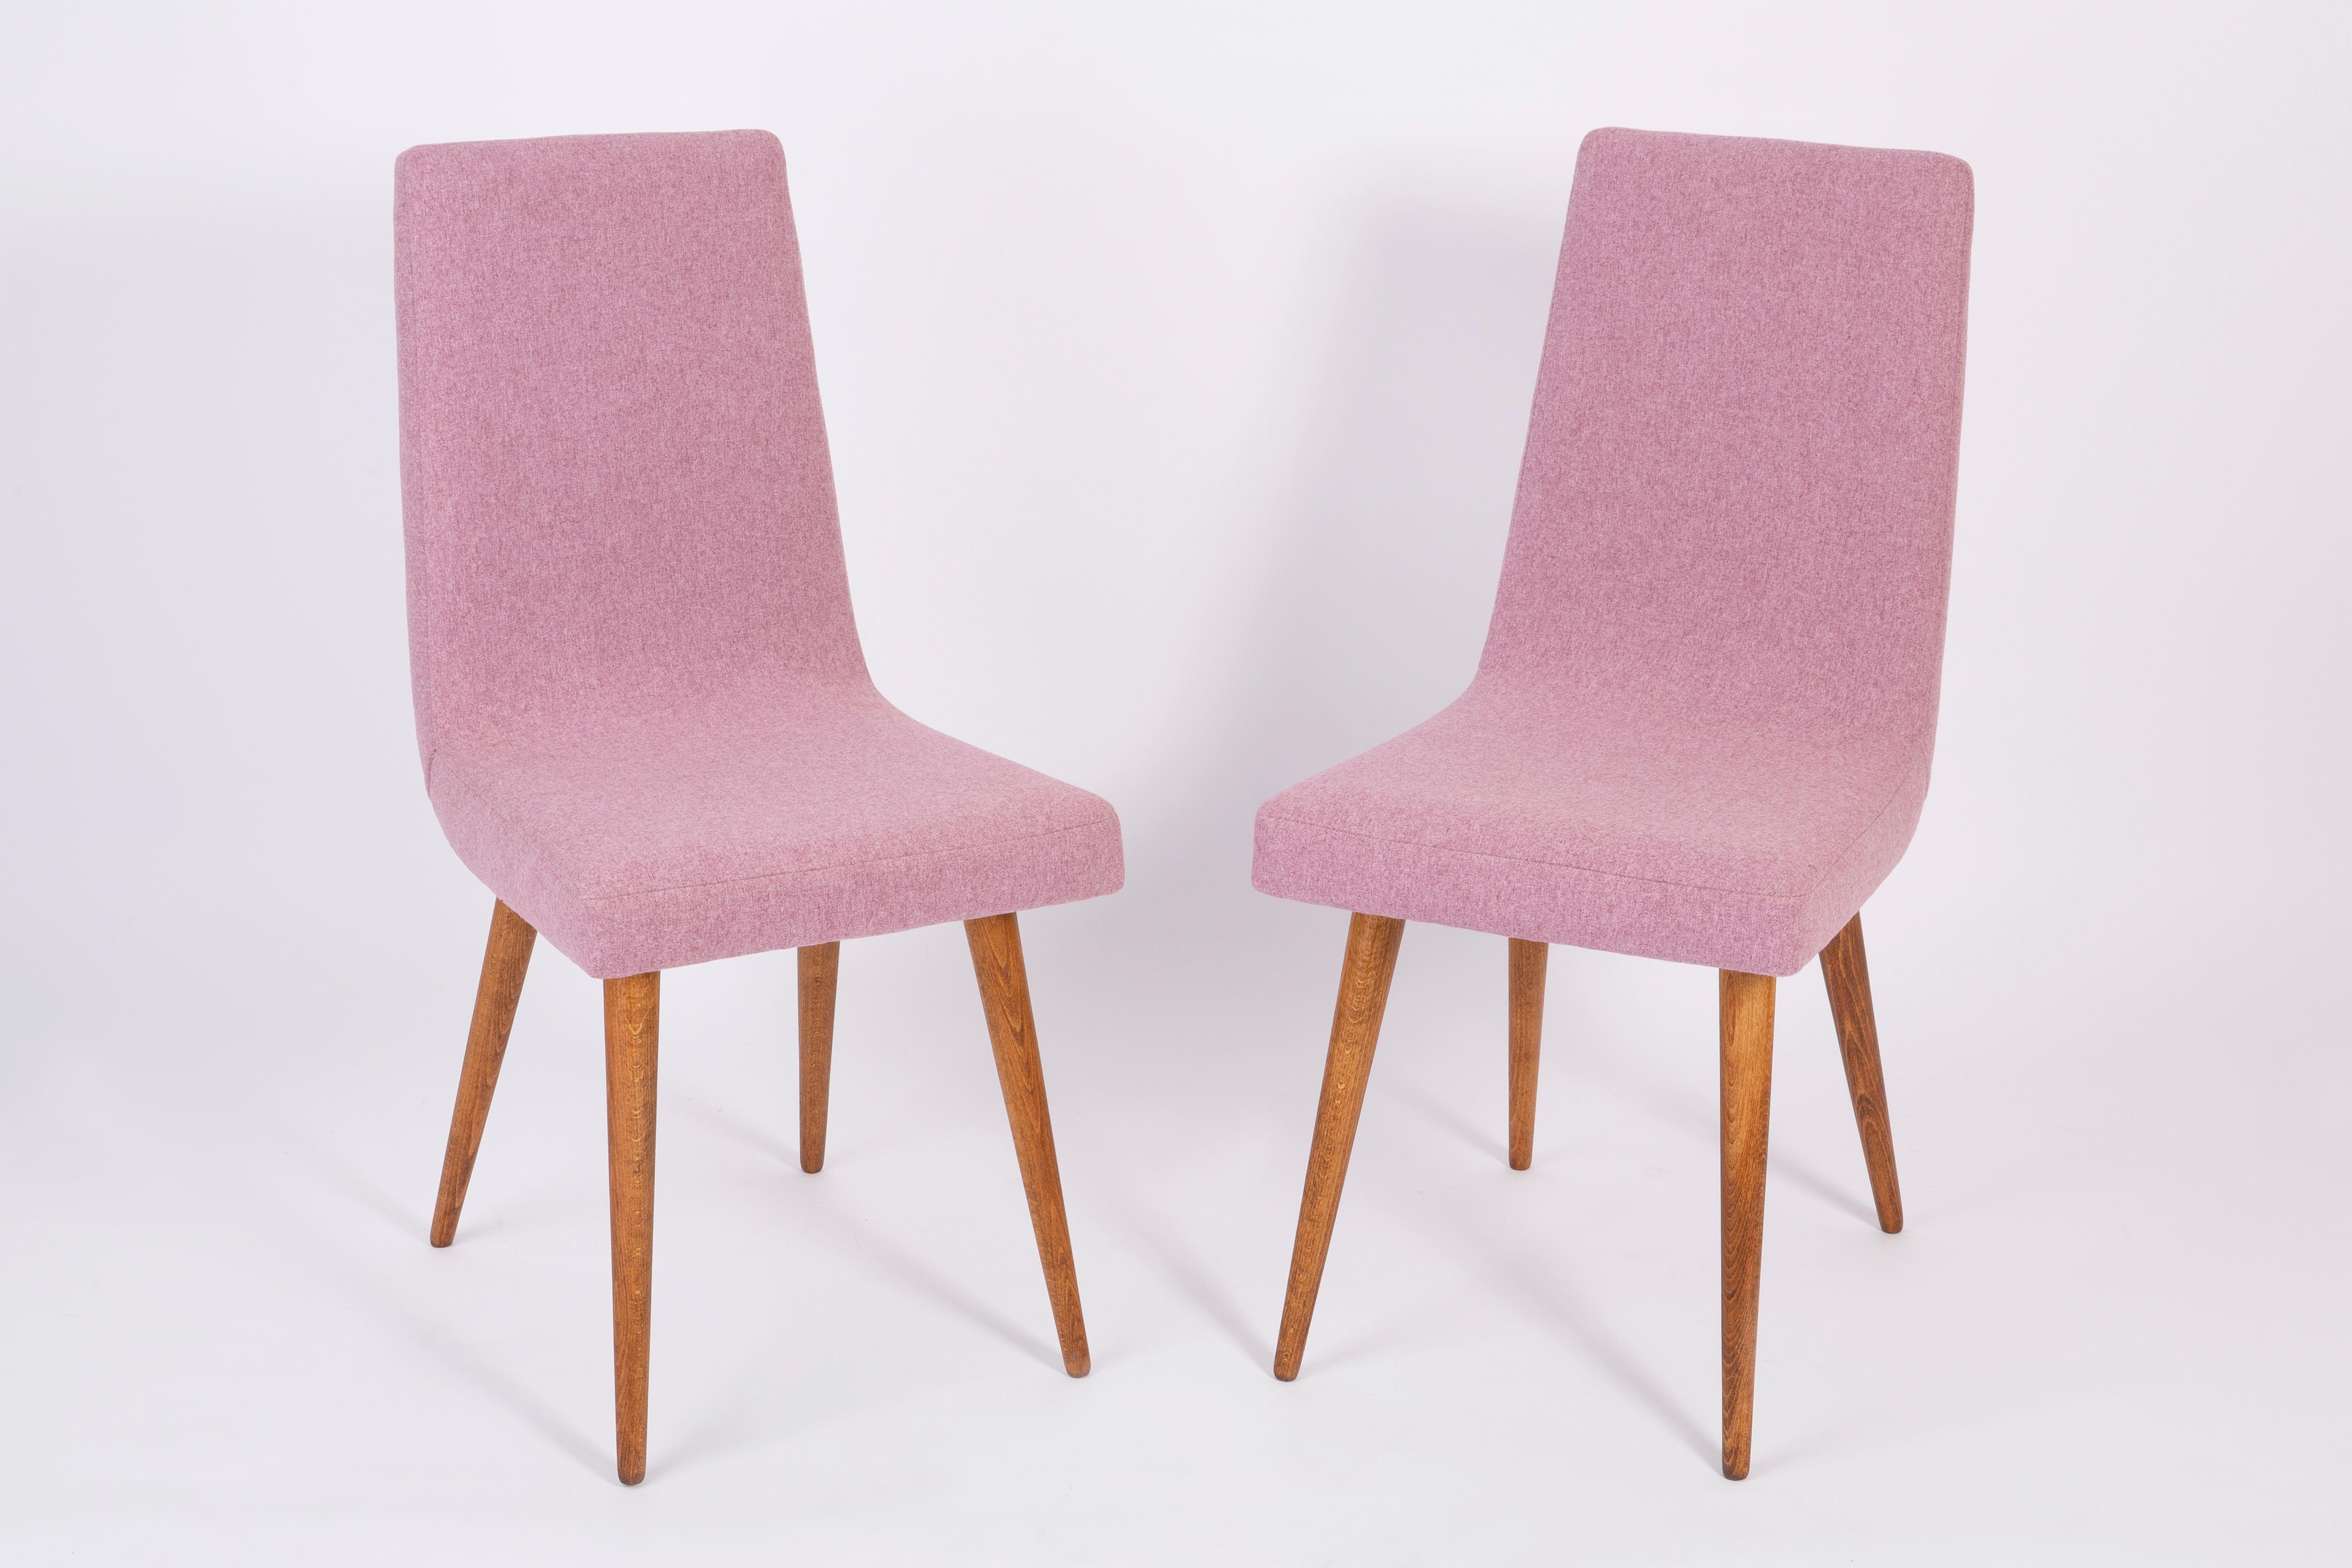 Ensemble de huit chaises roses Mlange Rajmund Halas du 20ème siècle, années 1960 Excellent état - En vente à 05-080 Hornowek, PL